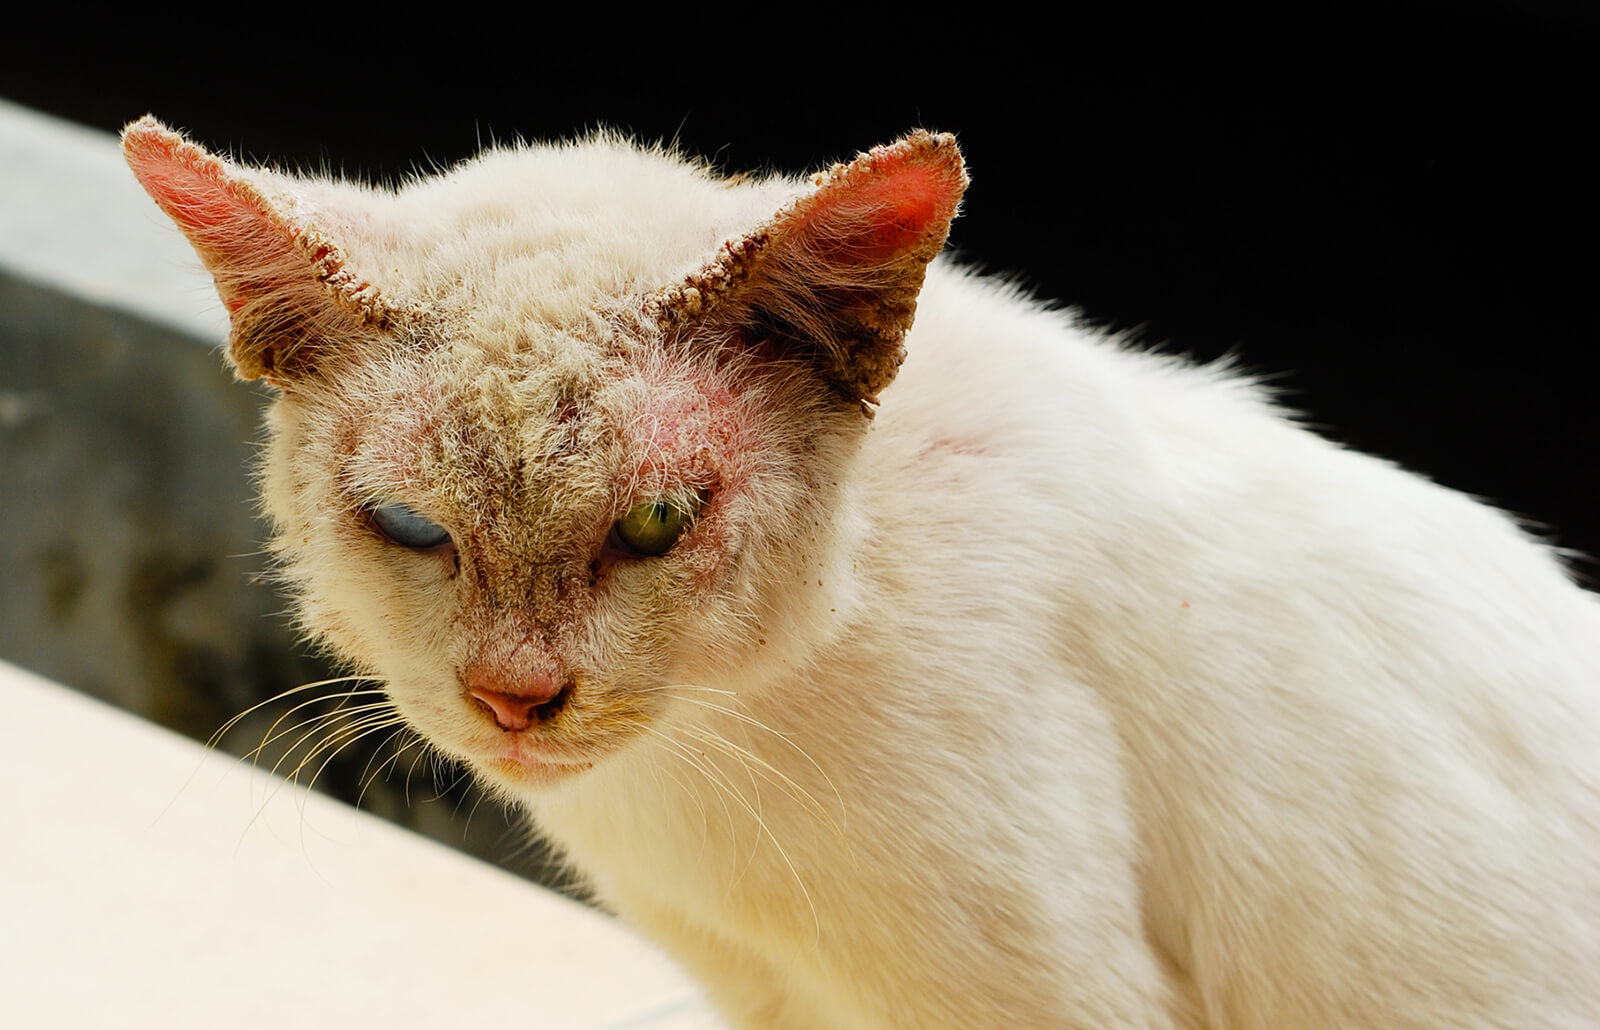 Милиарный дерматит у кошек